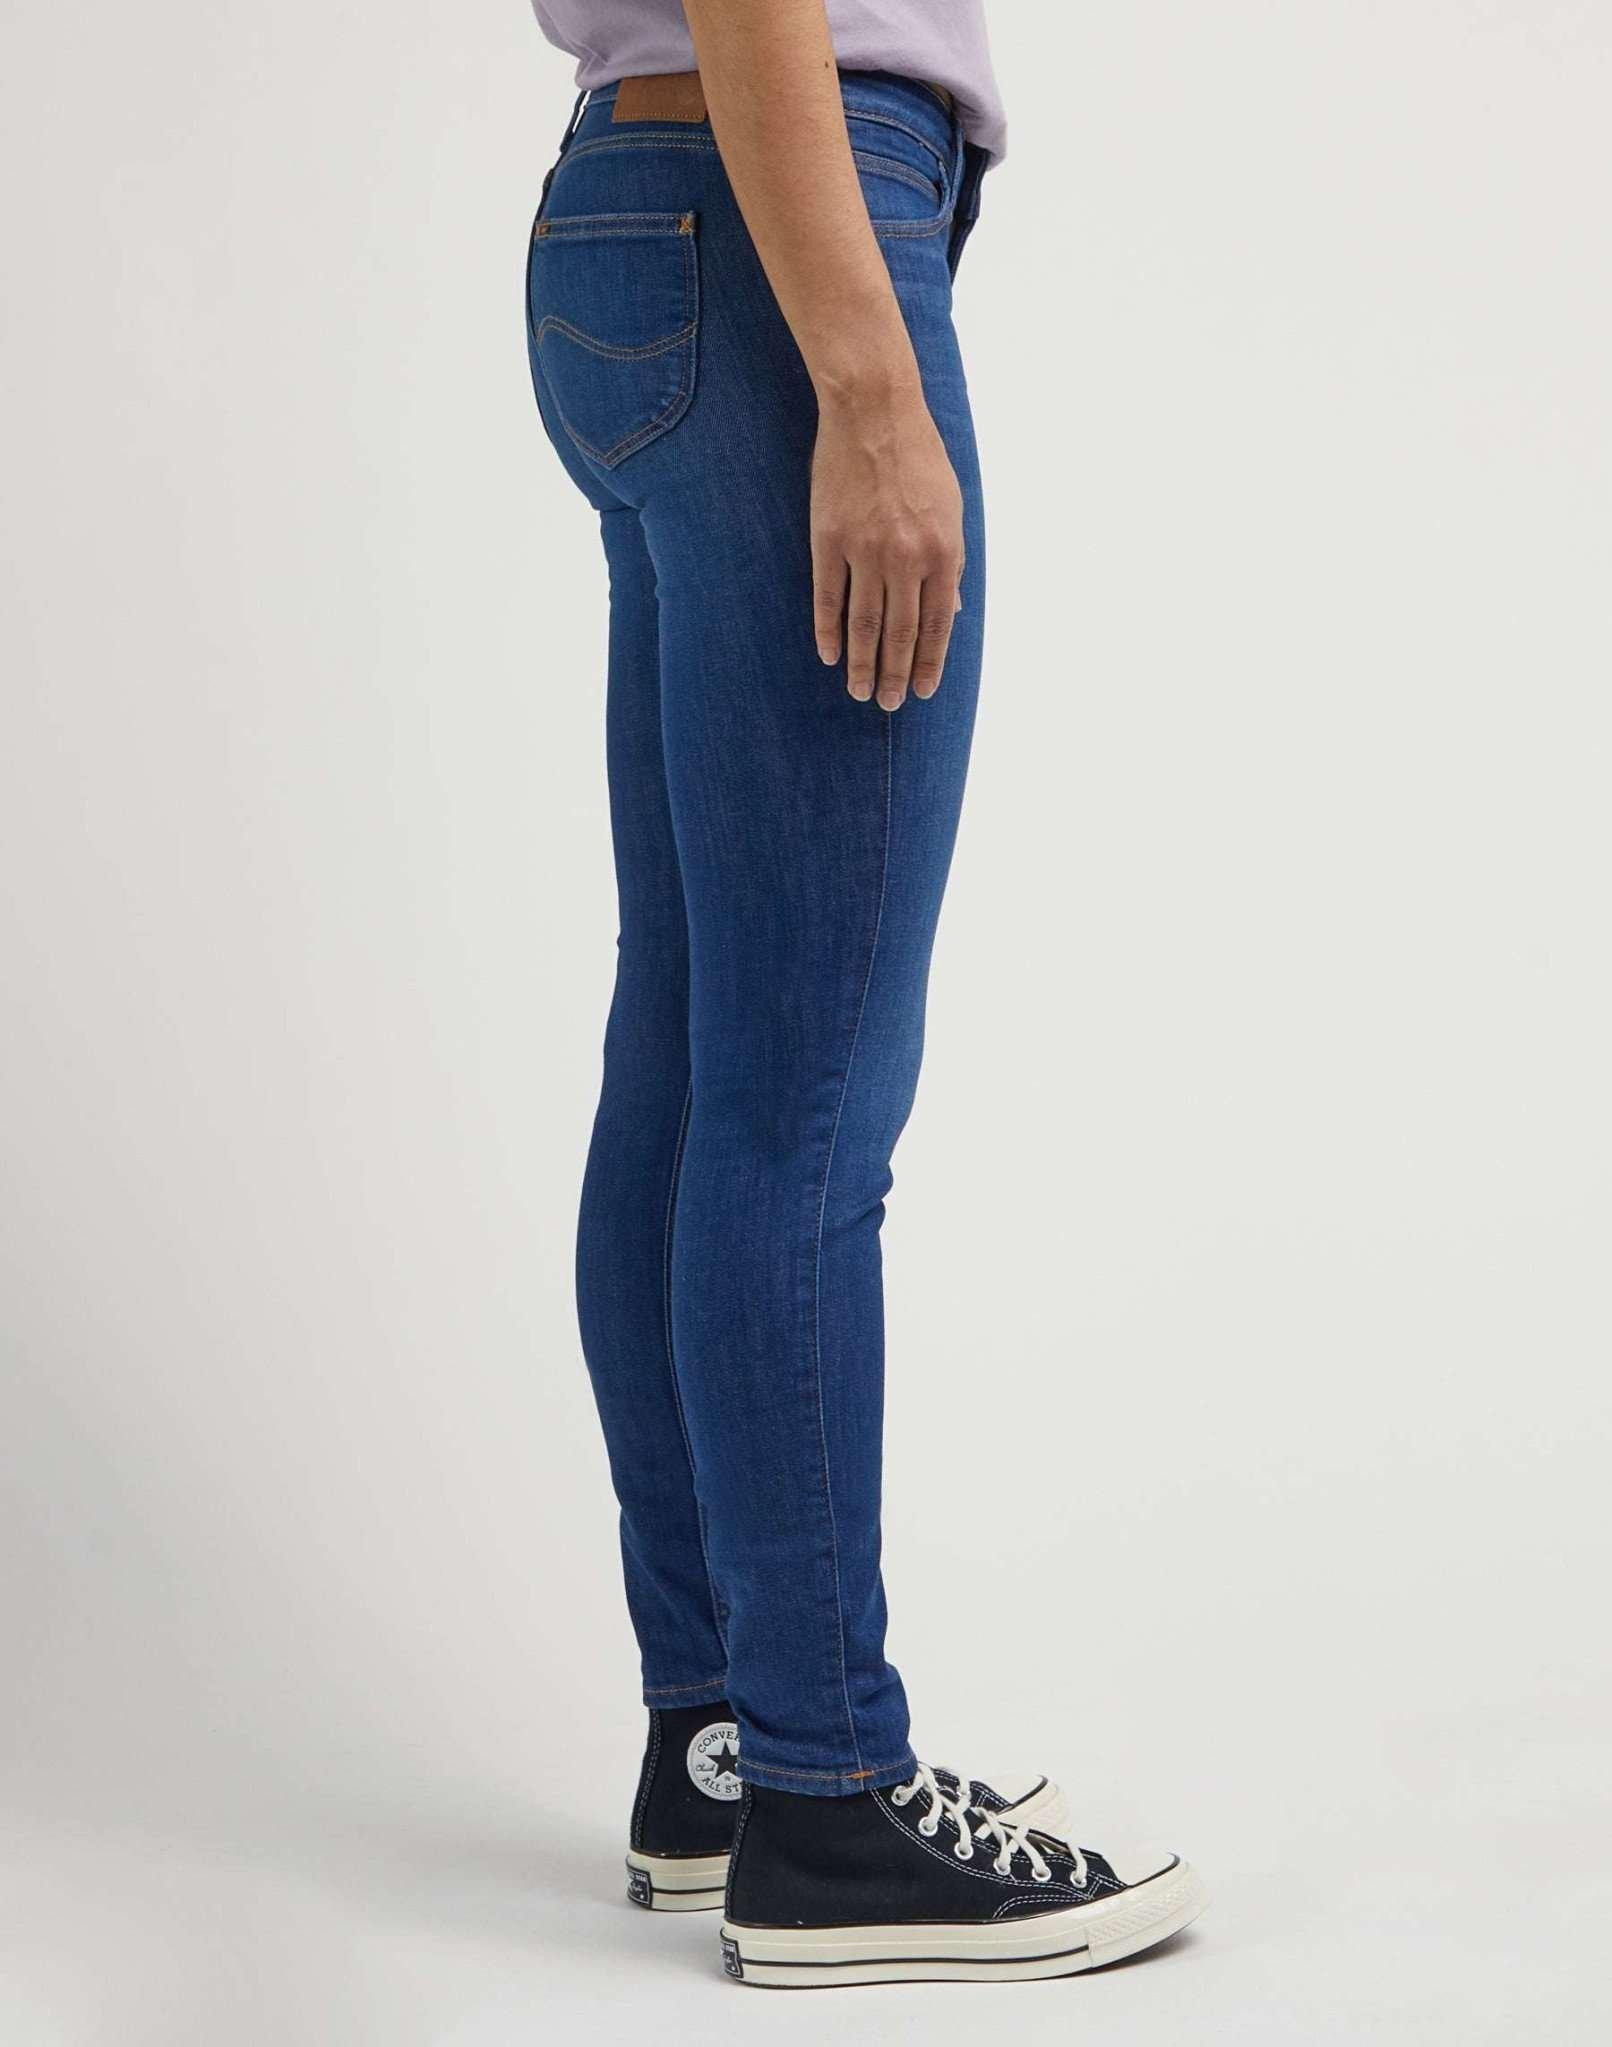 Lee  Jeans Skinny Fit Scarlett 